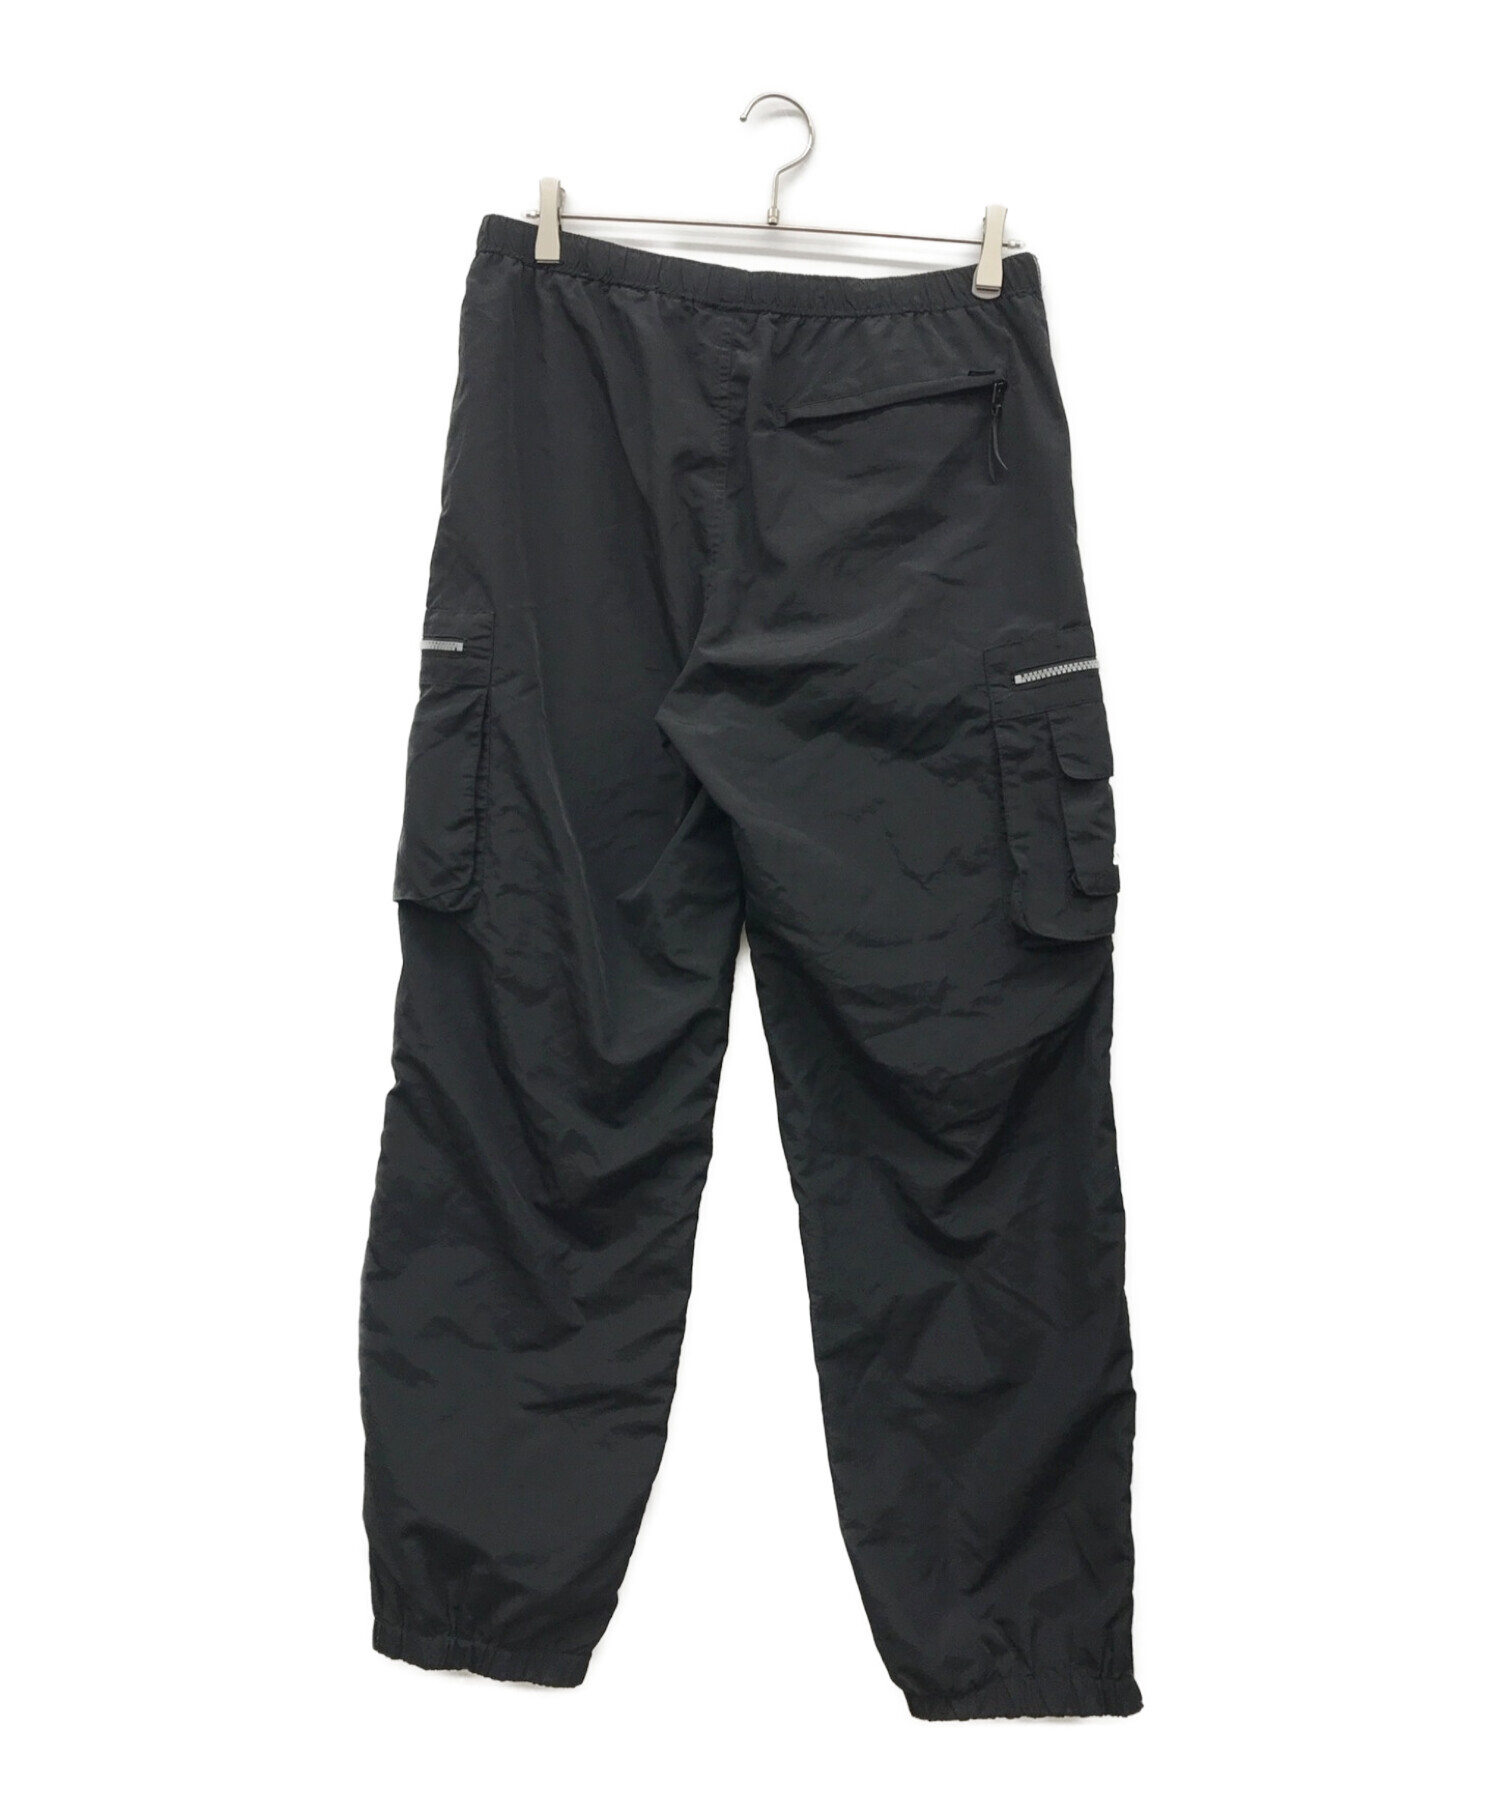 Supreme (シュプリーム) Nylon Cargo Pant ブラック サイズ:Small